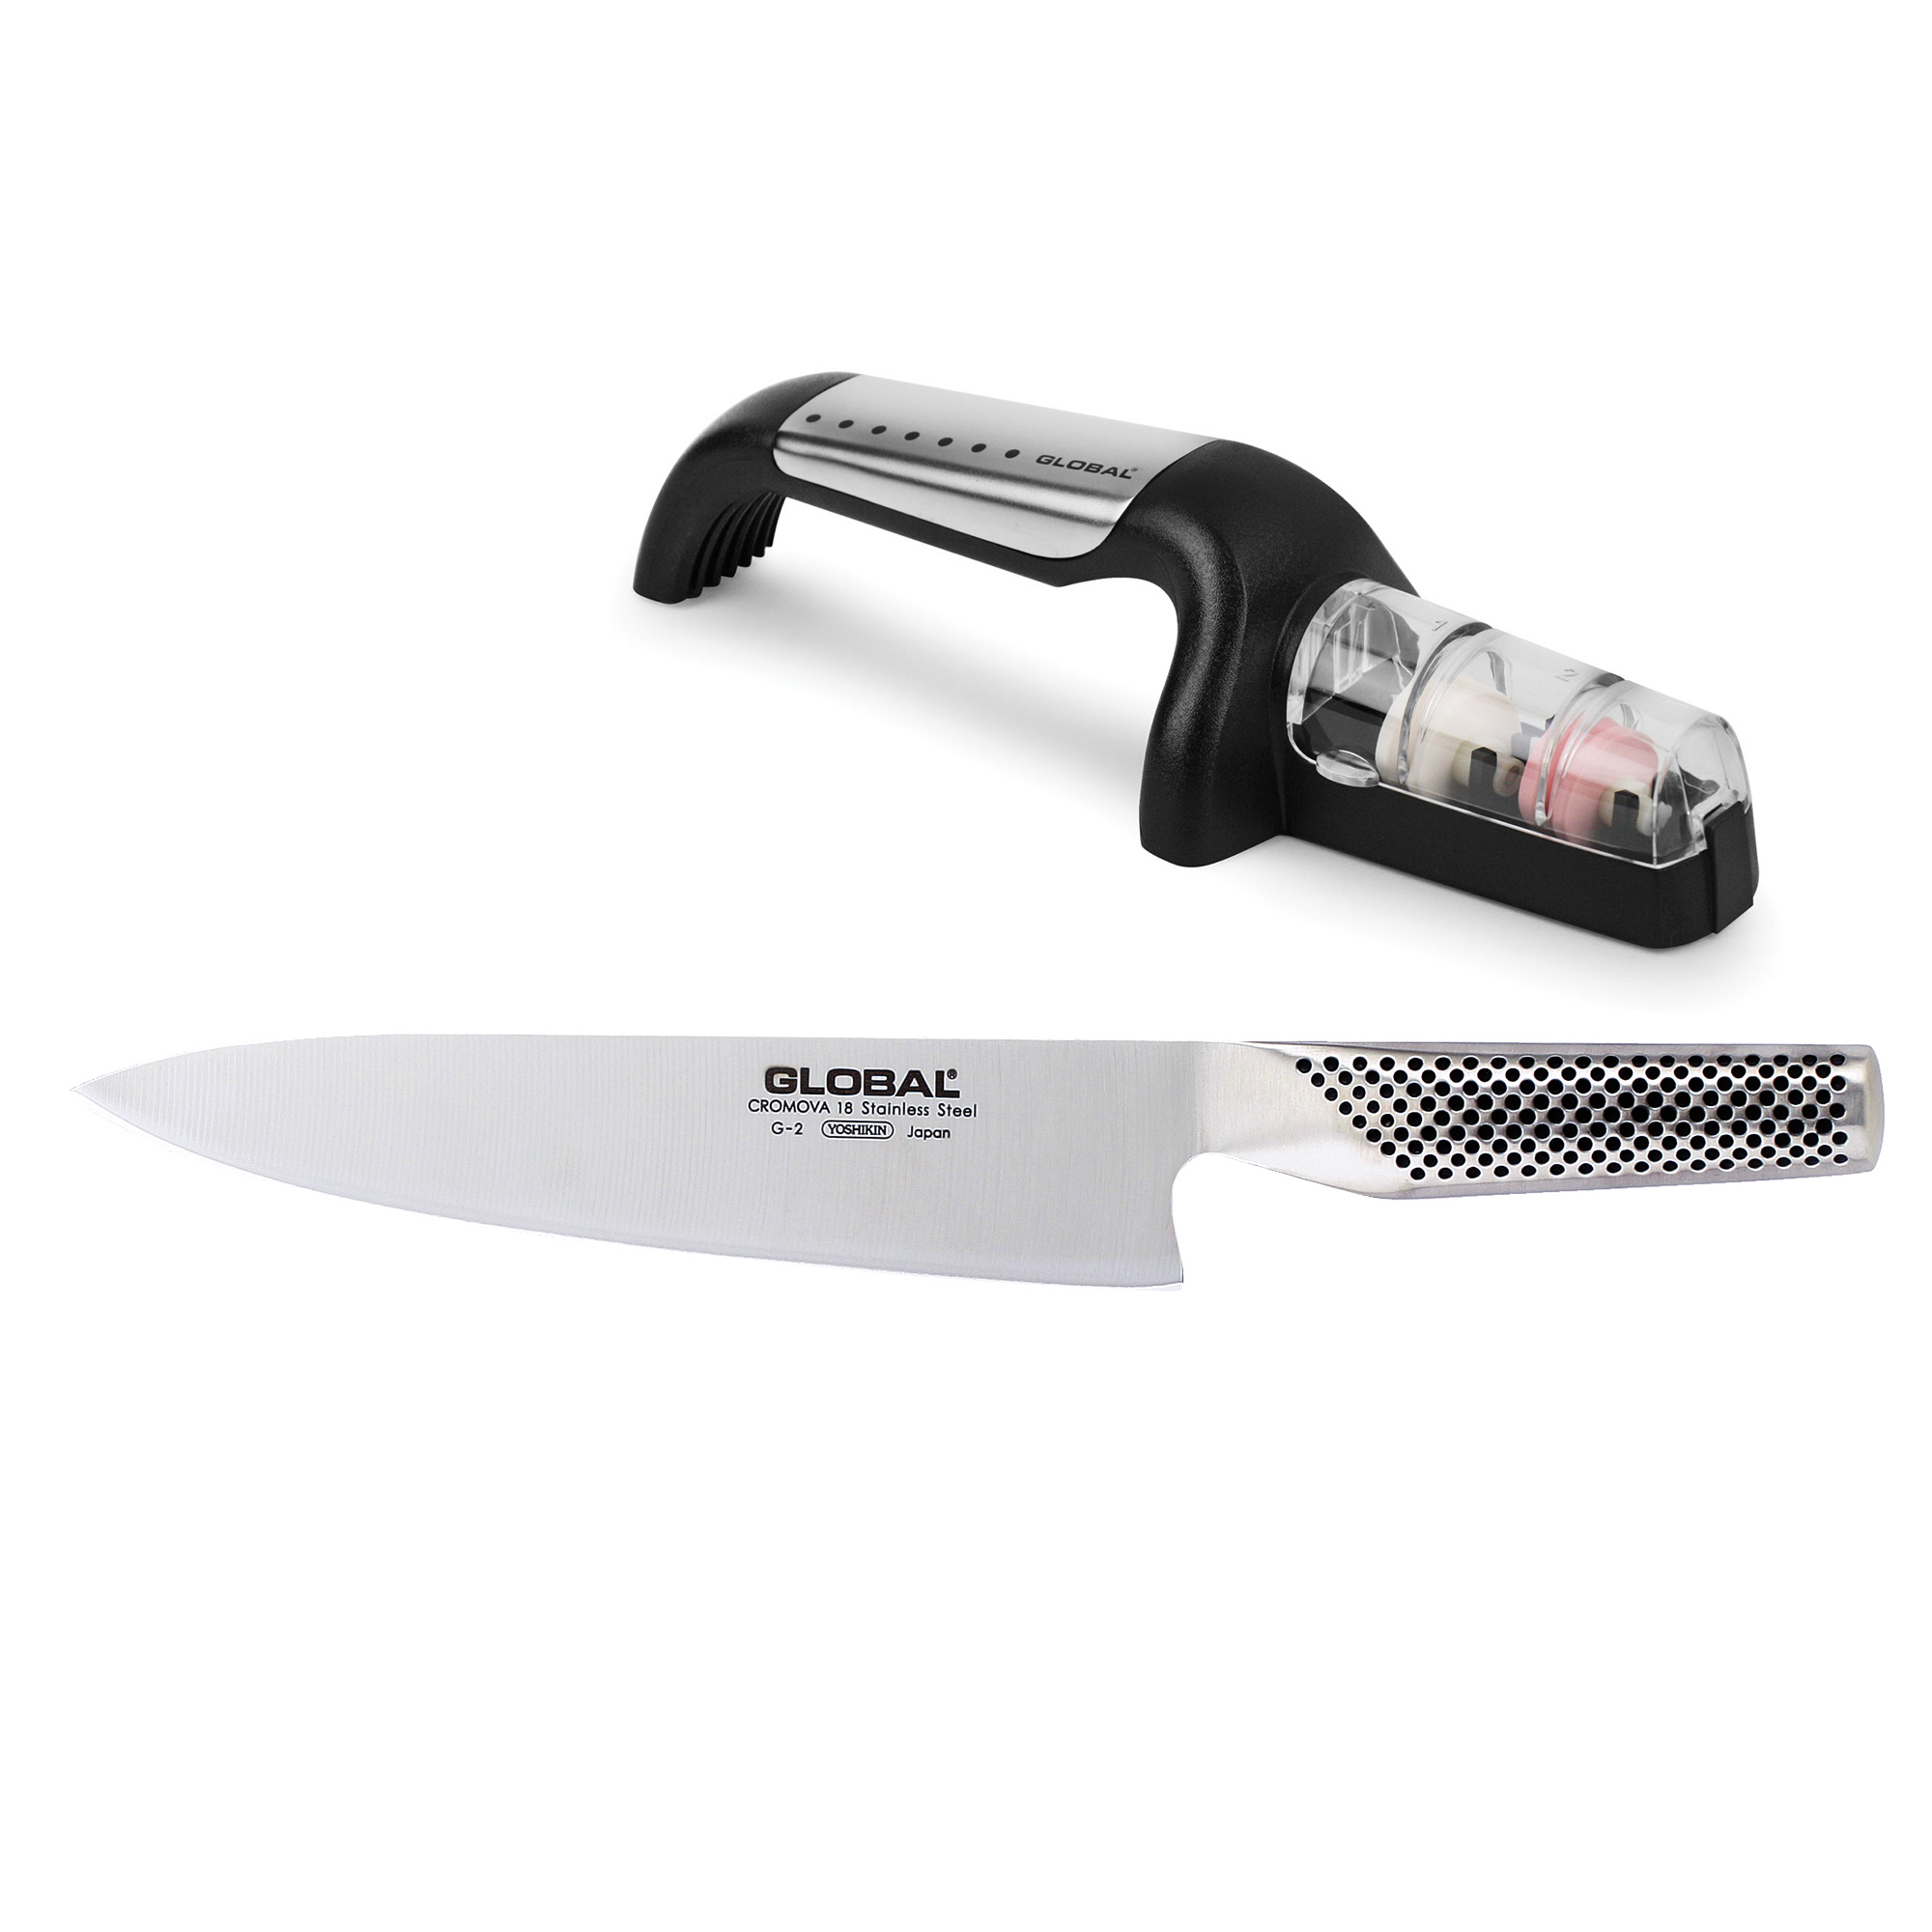 Global Knife & Sharpener Set 2pc Starter Set (G2, G91SB Sharpener)